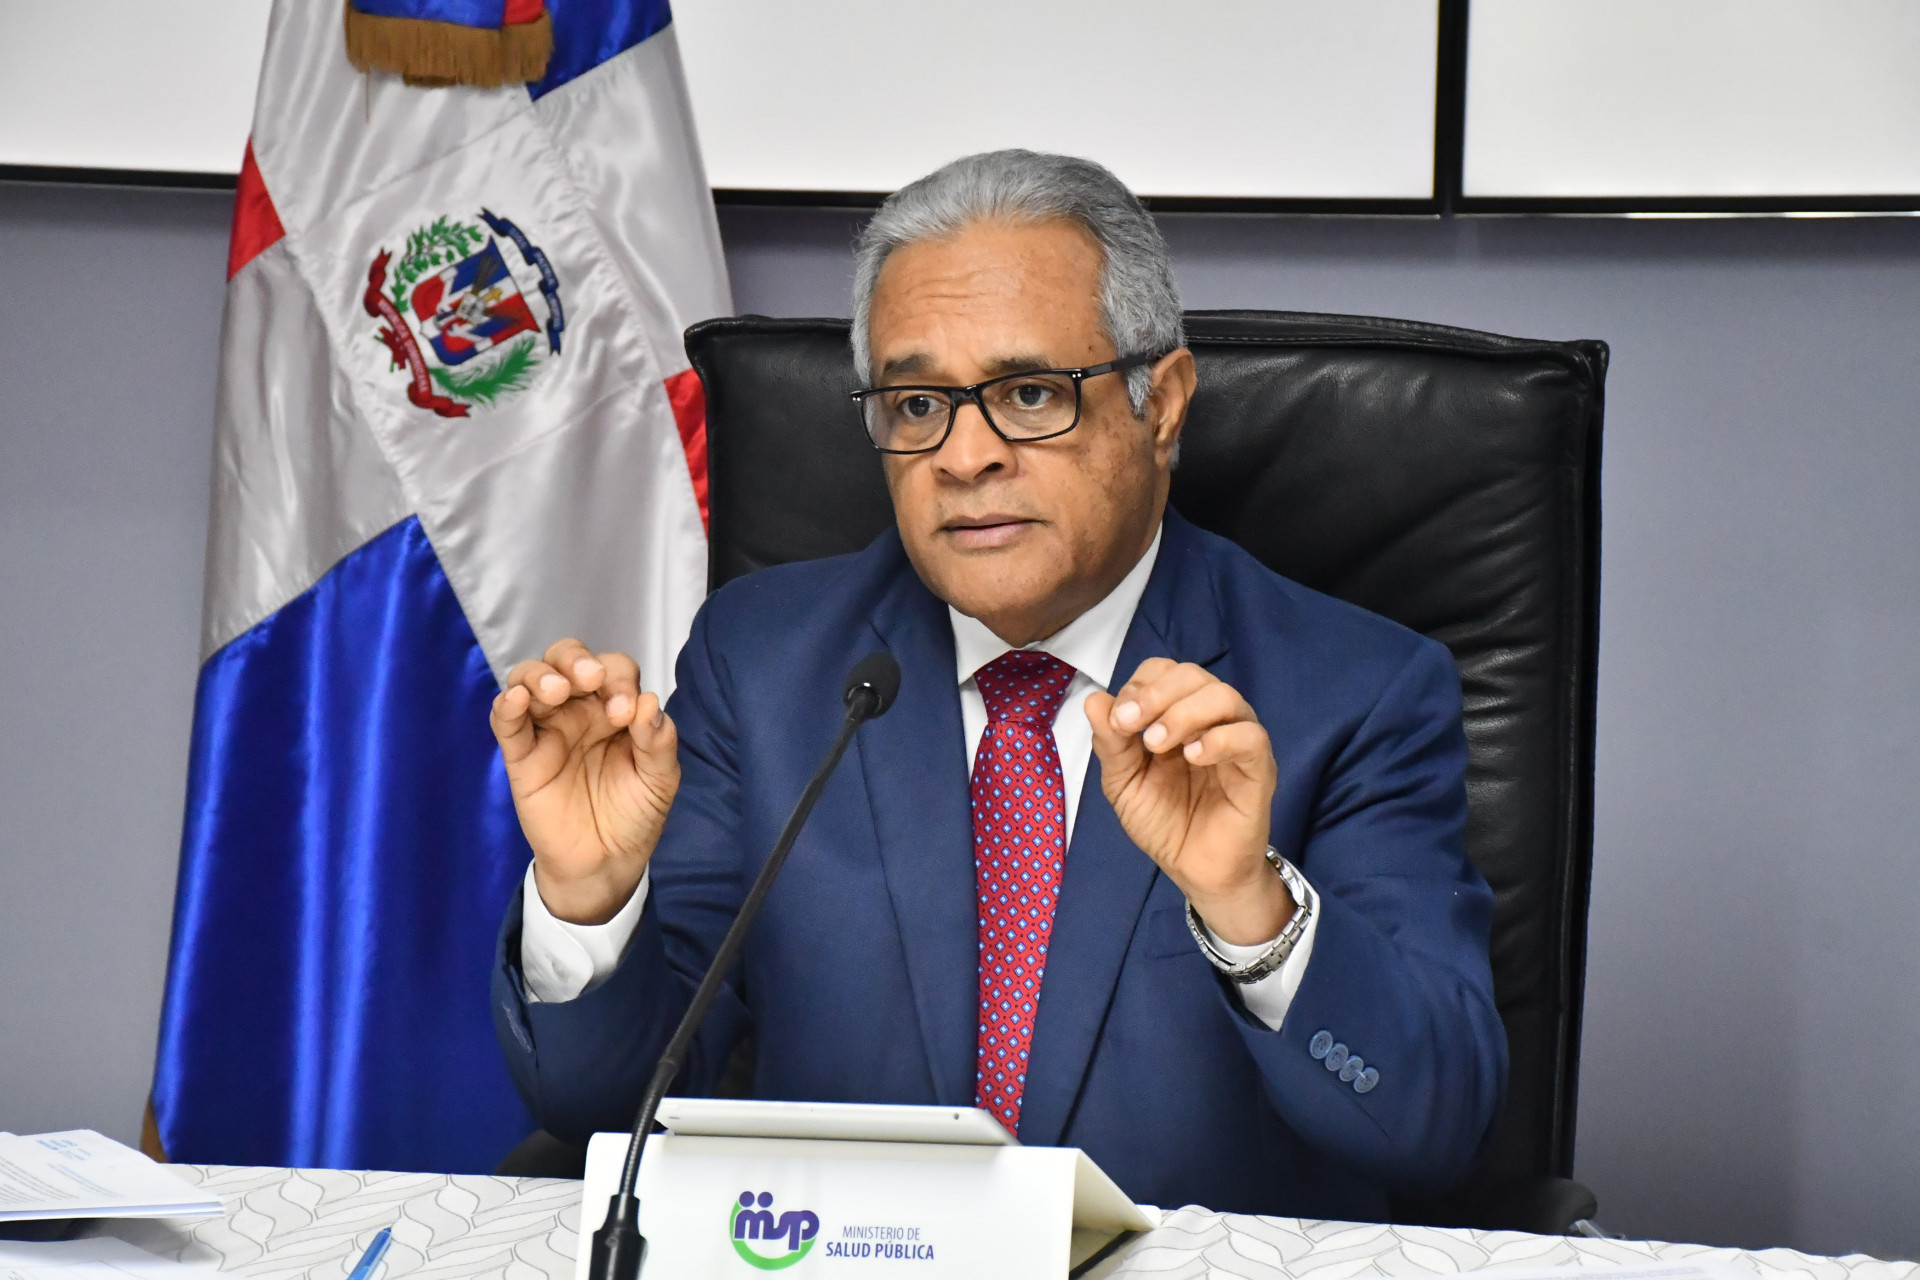 REPÚBLICA DOMINICANA: Más de mil personas se han recuperado de COVID-19 en República Dominicana; tasa de letalidad entre las más bajas del mundo